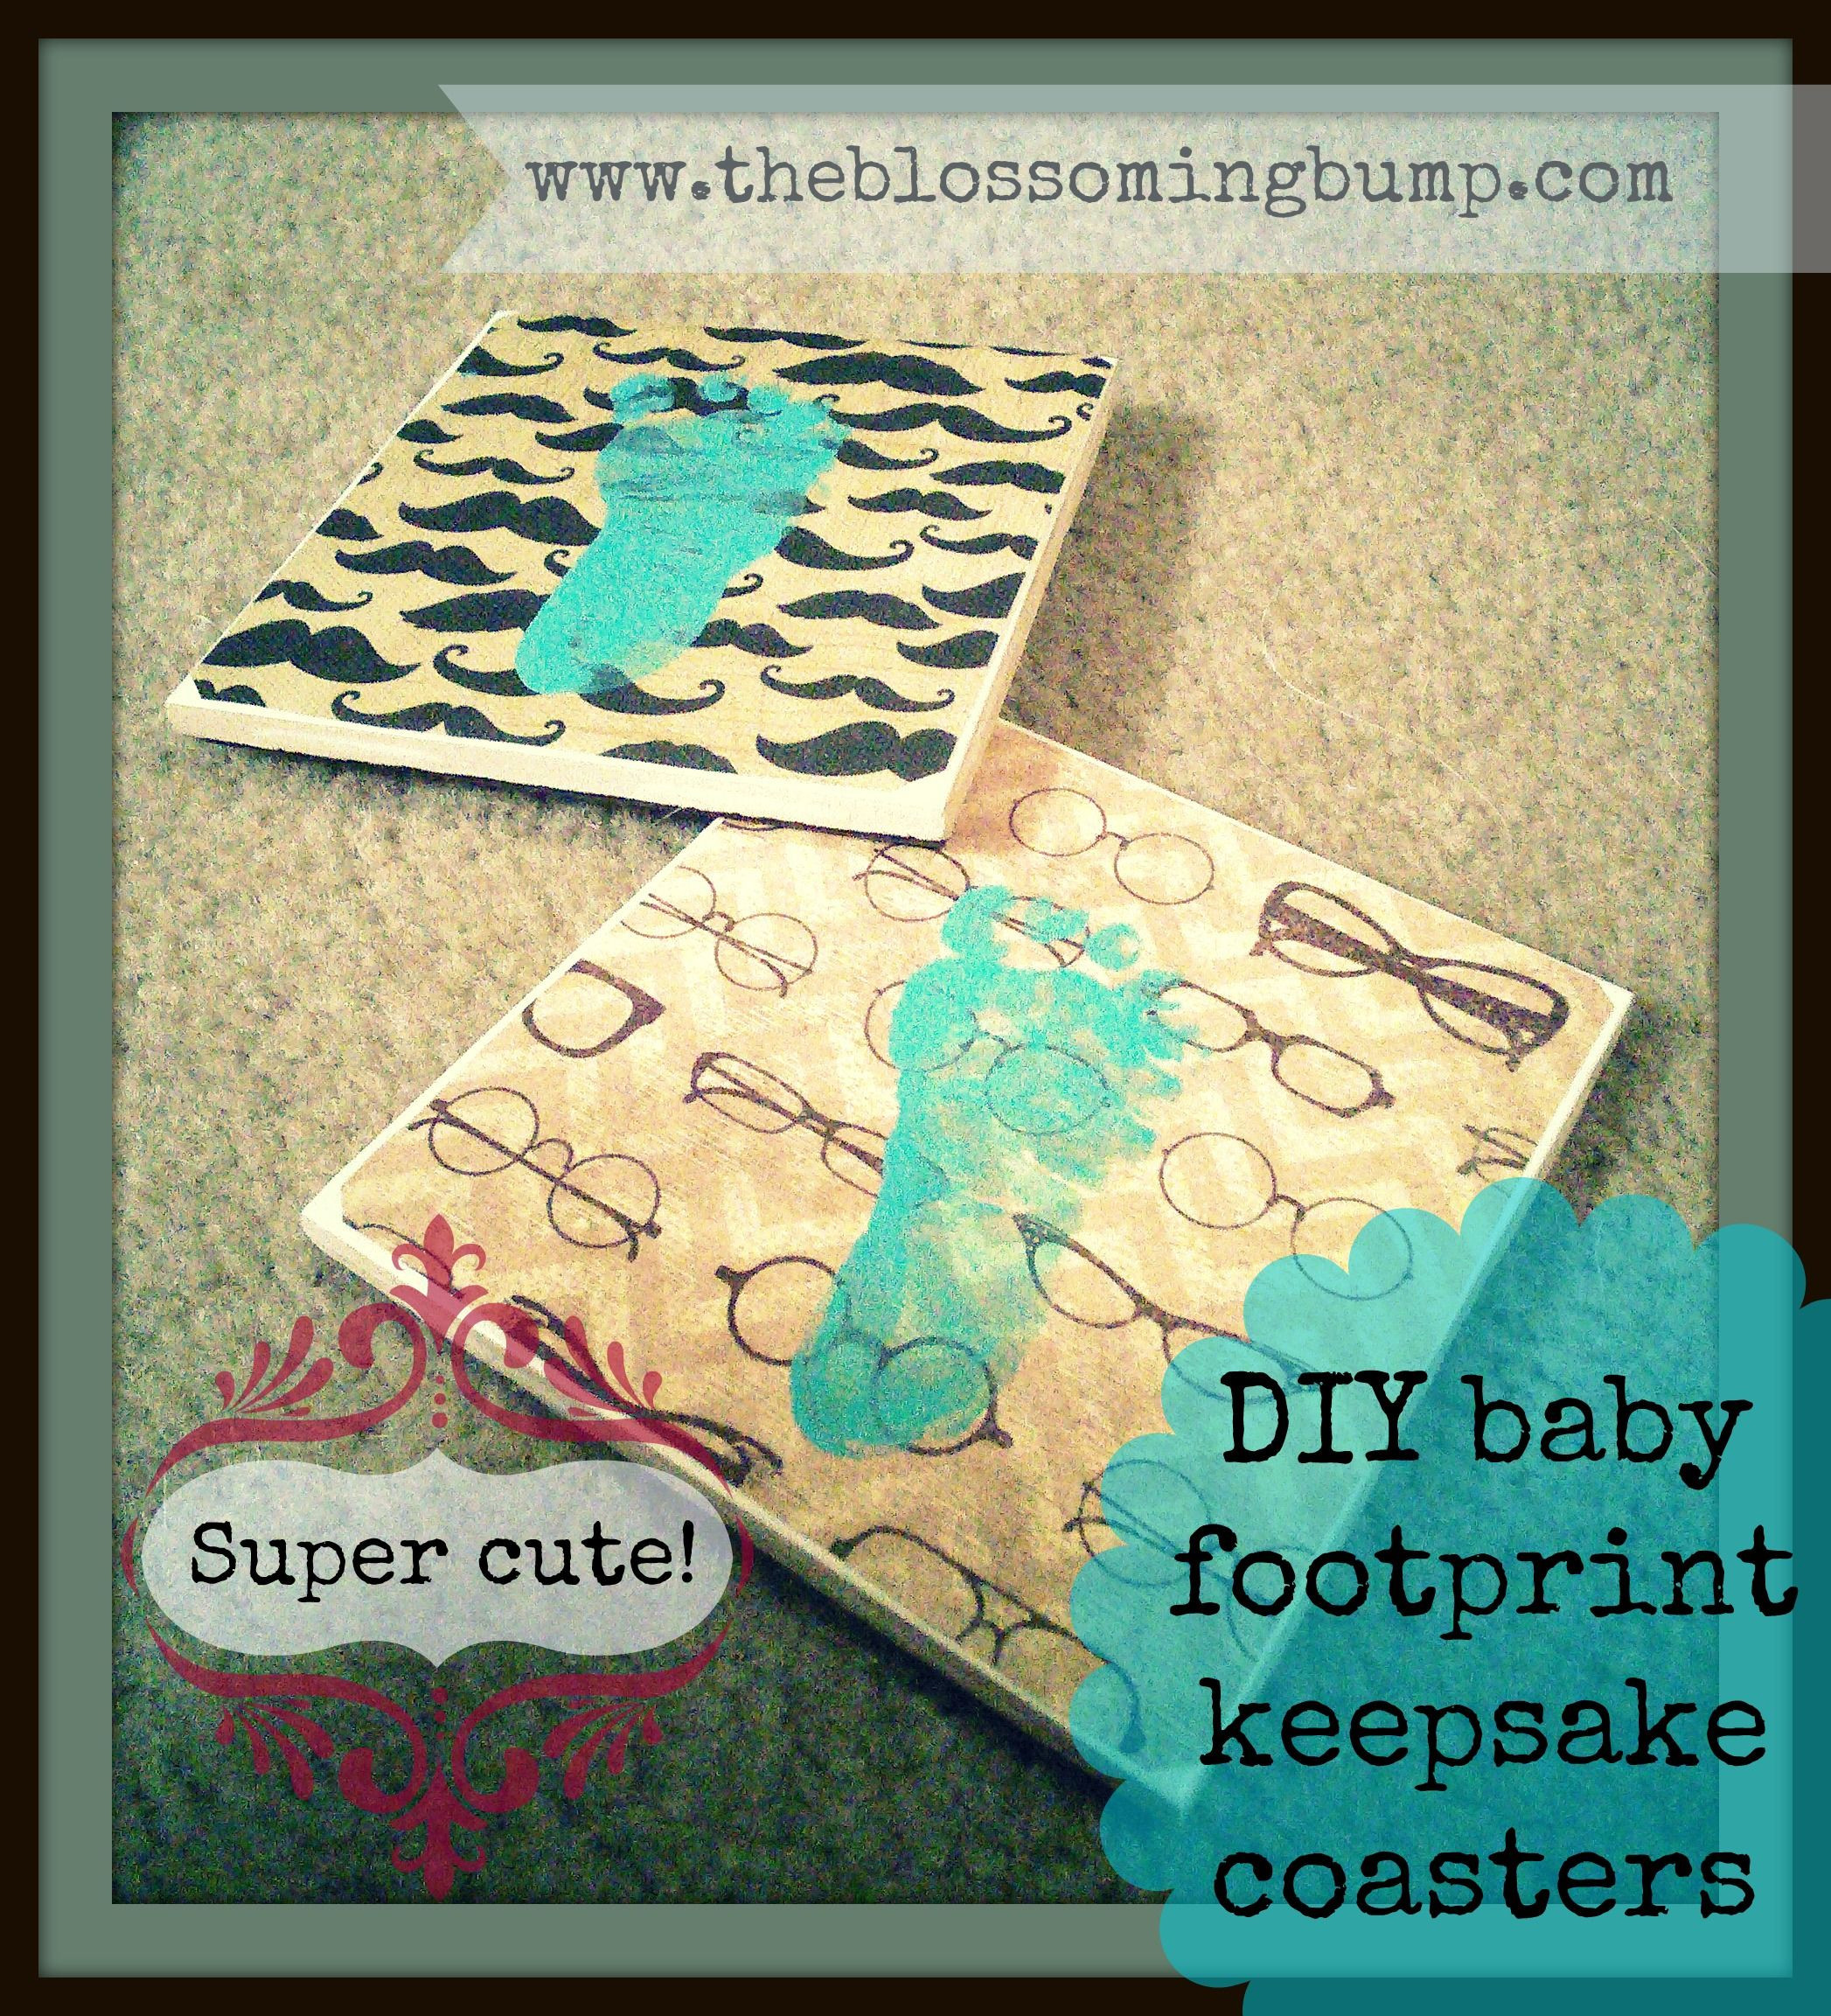 Baby Footprints DIY
 Super cute DIY baby footprint keepsake coasters and other